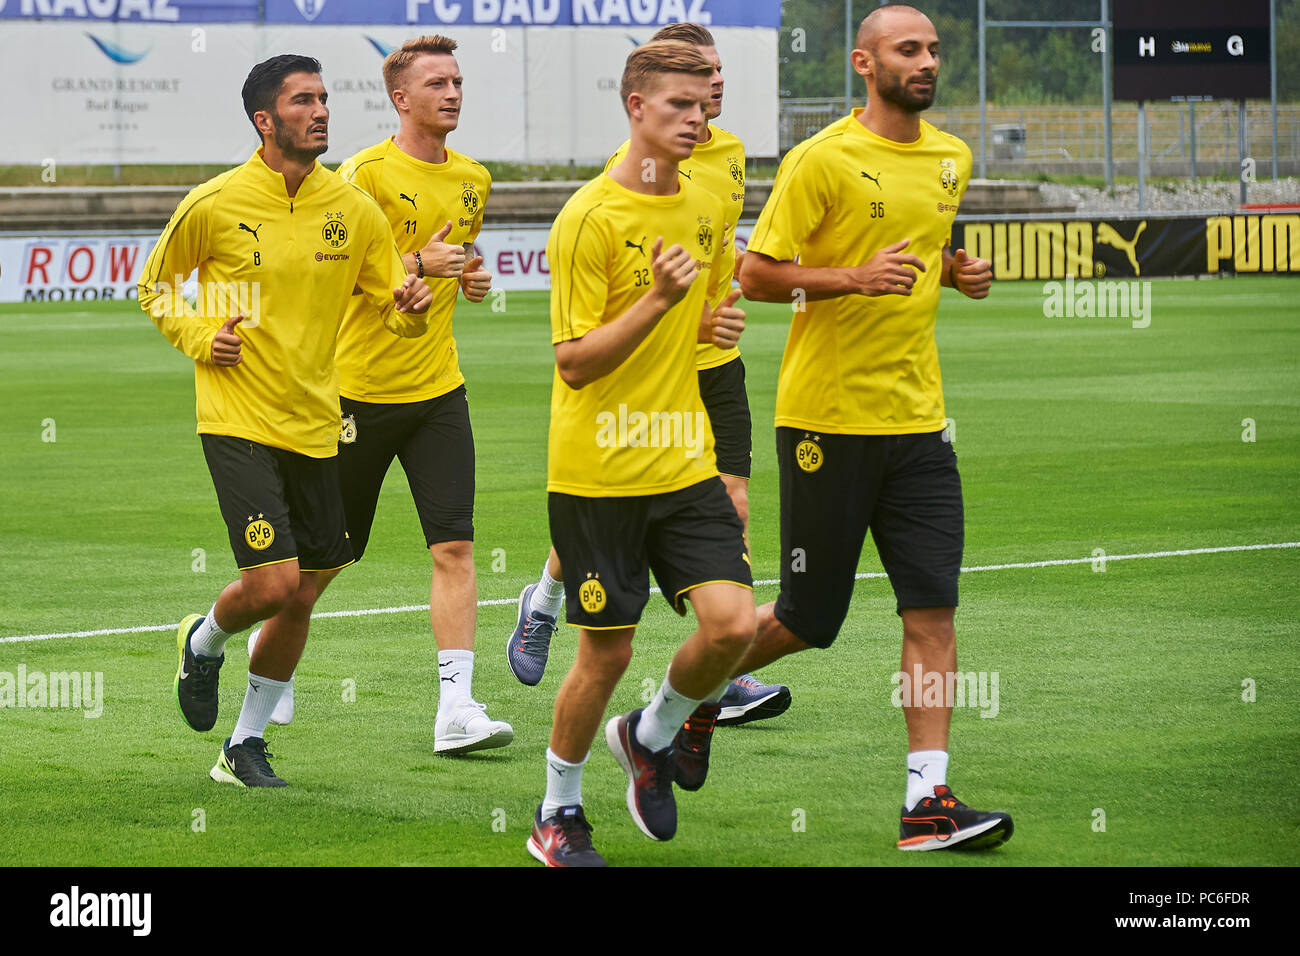 Nuri SAHIN, Borussia Dortmund, Deutsche Bundesliga Spiel Borussia Dortmund  gegen VfL Wolfsburg Stockfotografie - Alamy